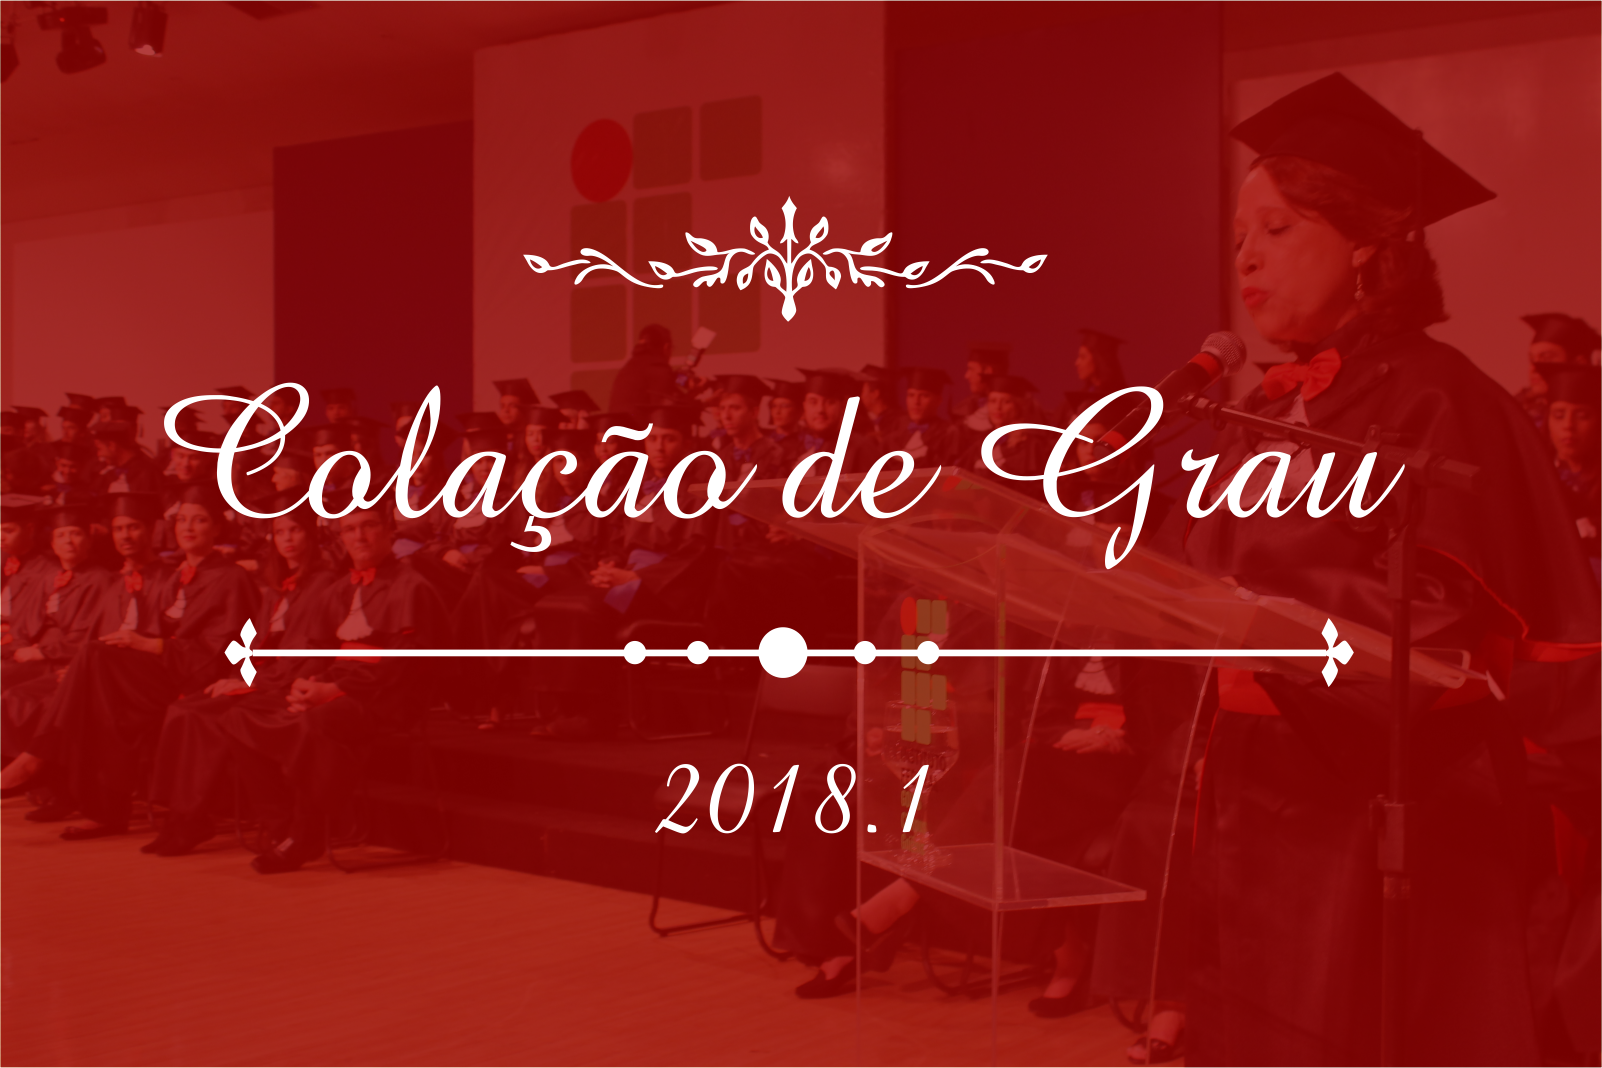 Sessão solene de colação de grau 2018/1 será realizada no dia 20 de julho, no Centro de Cultura e Eventos da UFG, em Goiânia.